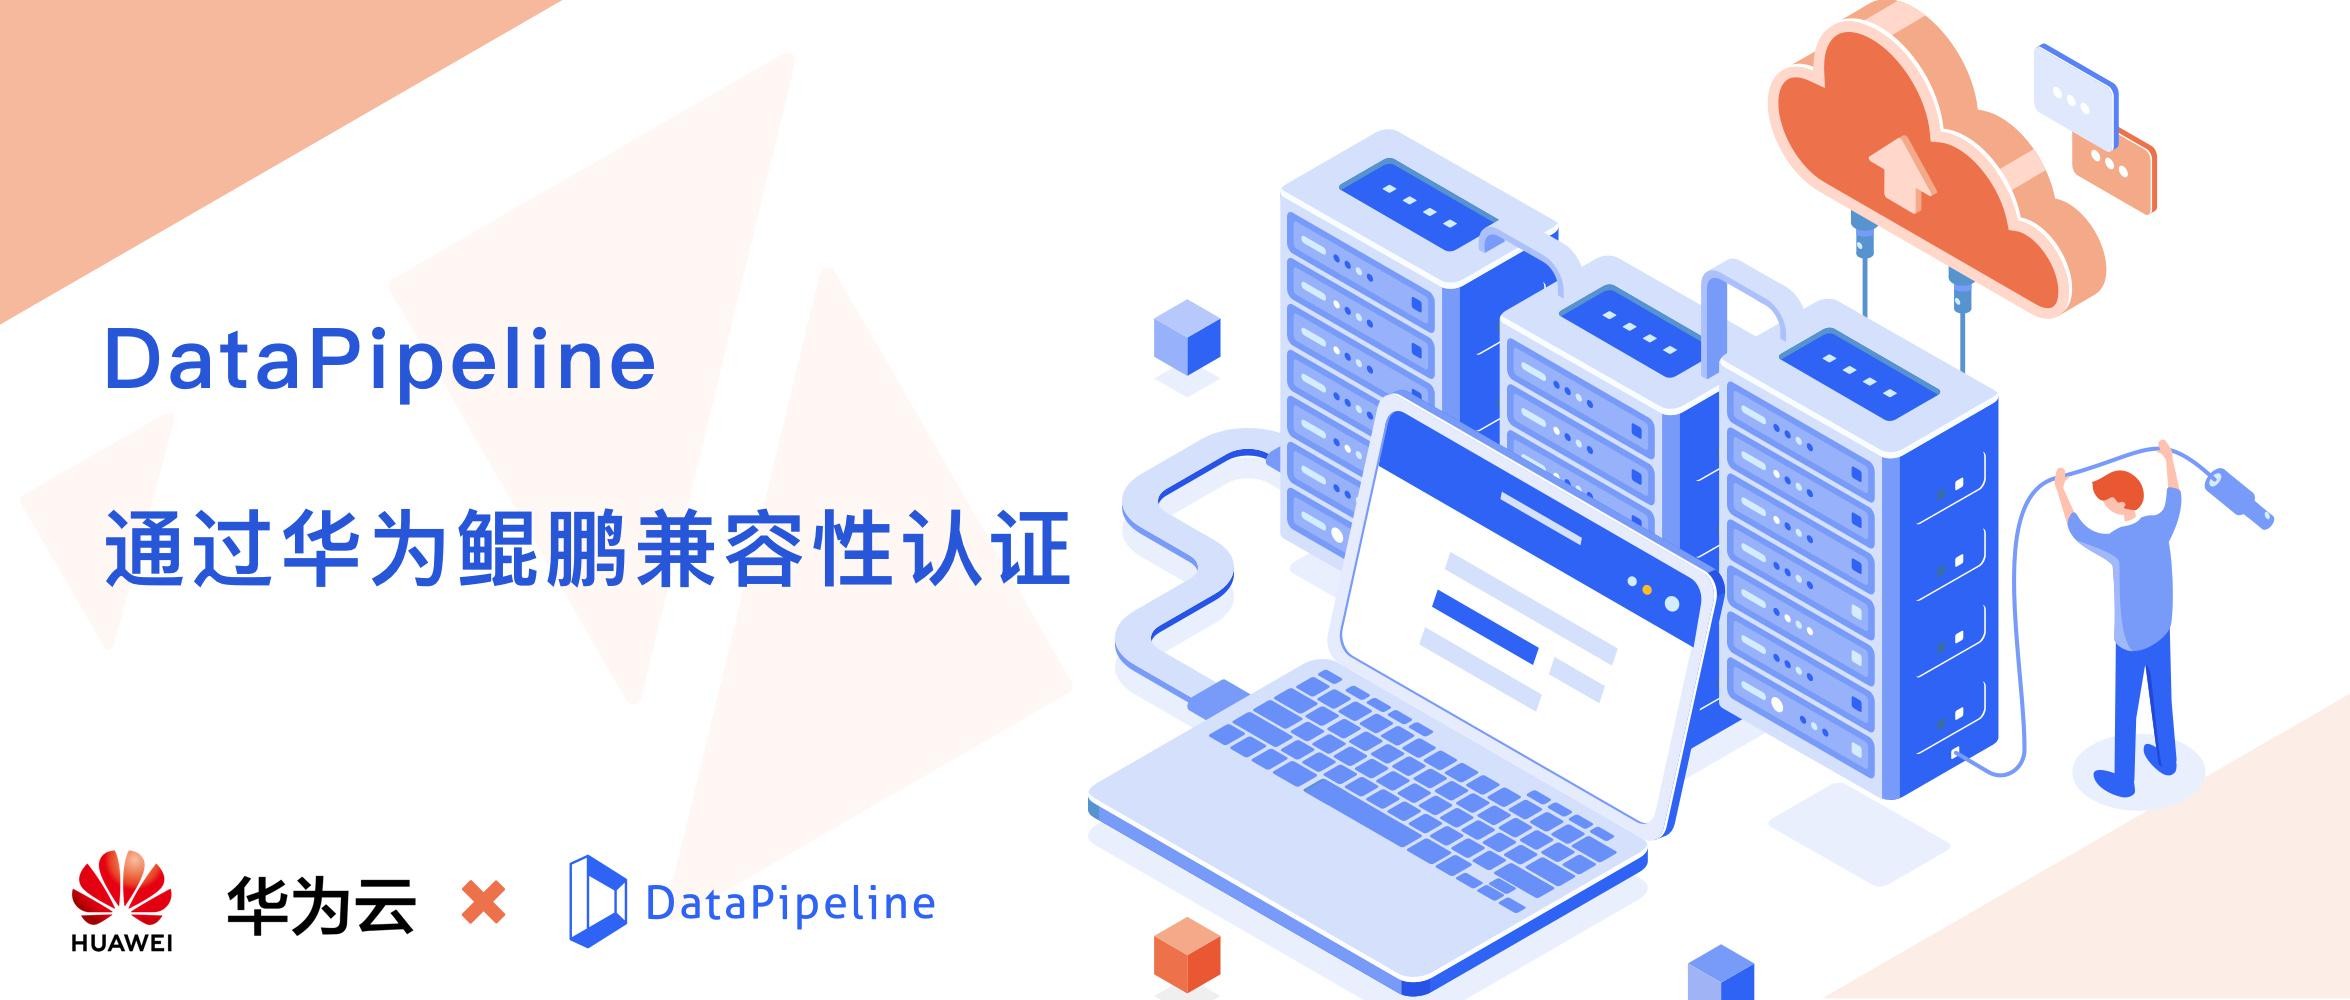 DataPipeline通过华为鲲鹏兼容性认证，以自主创新推动中国信息产业进步